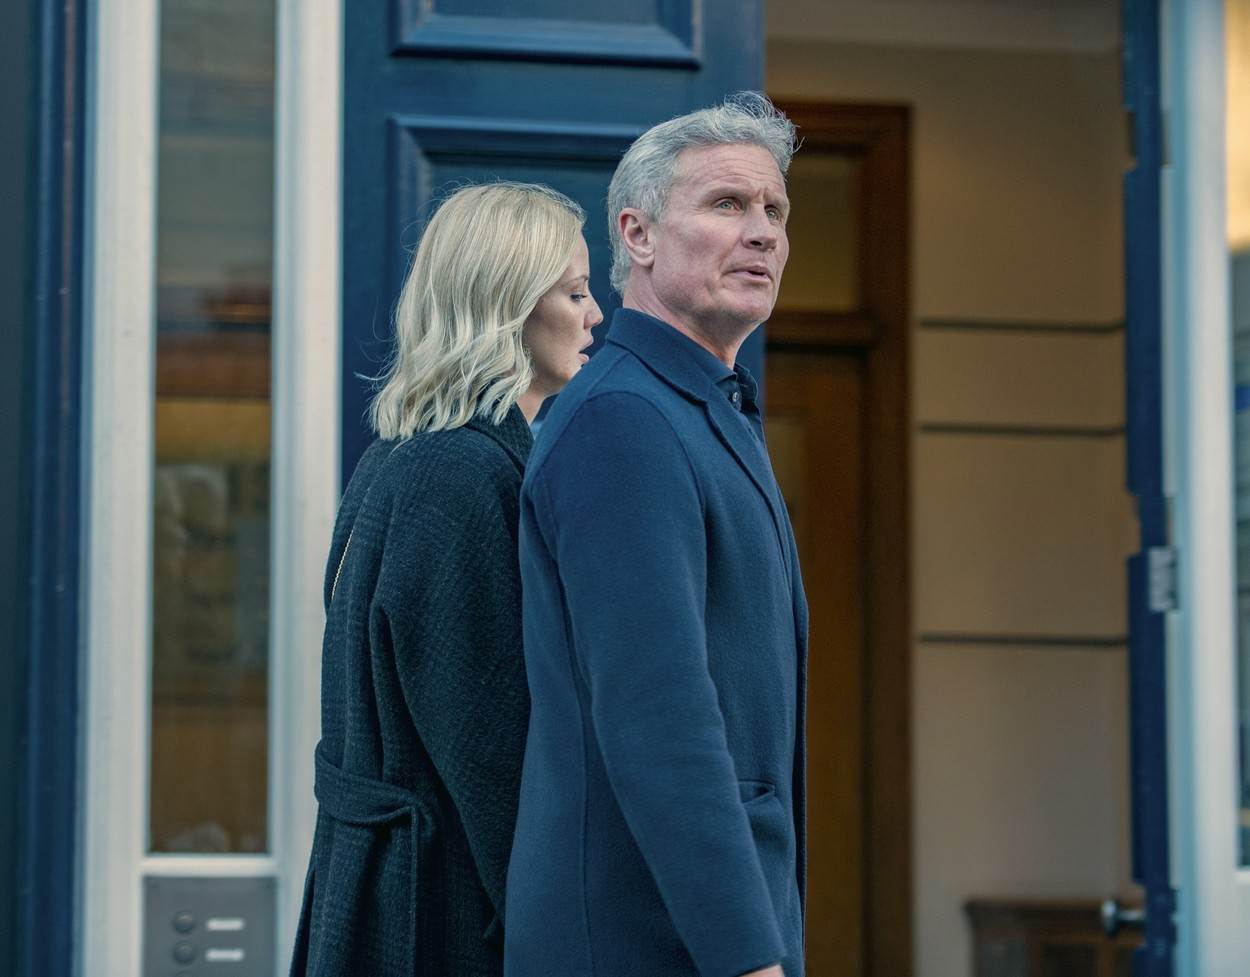 David Coulthard i Sigrid Silversand prošetali su zajedno ulicama Londona